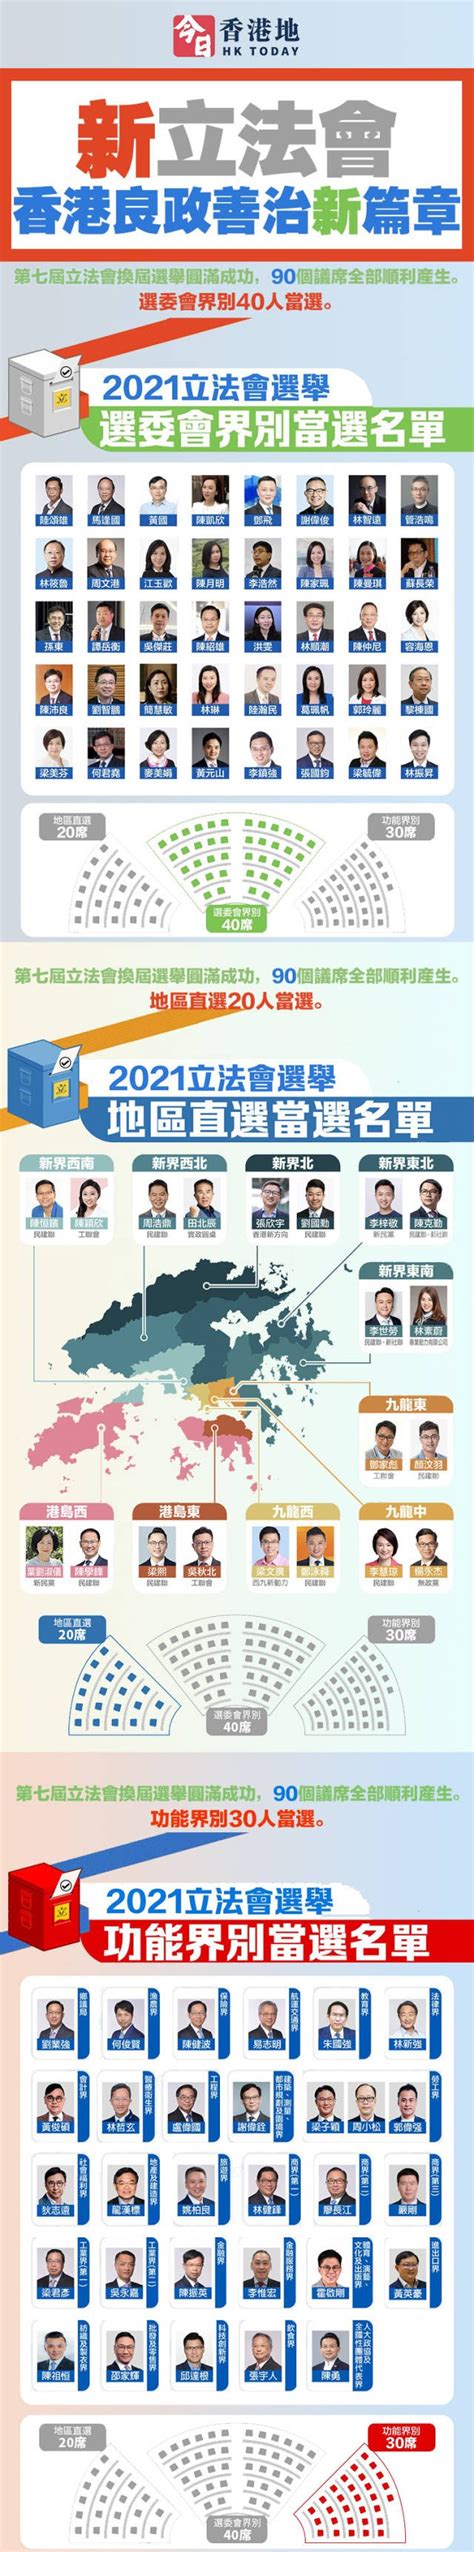 香港特区选举制度如何完善？干货来了